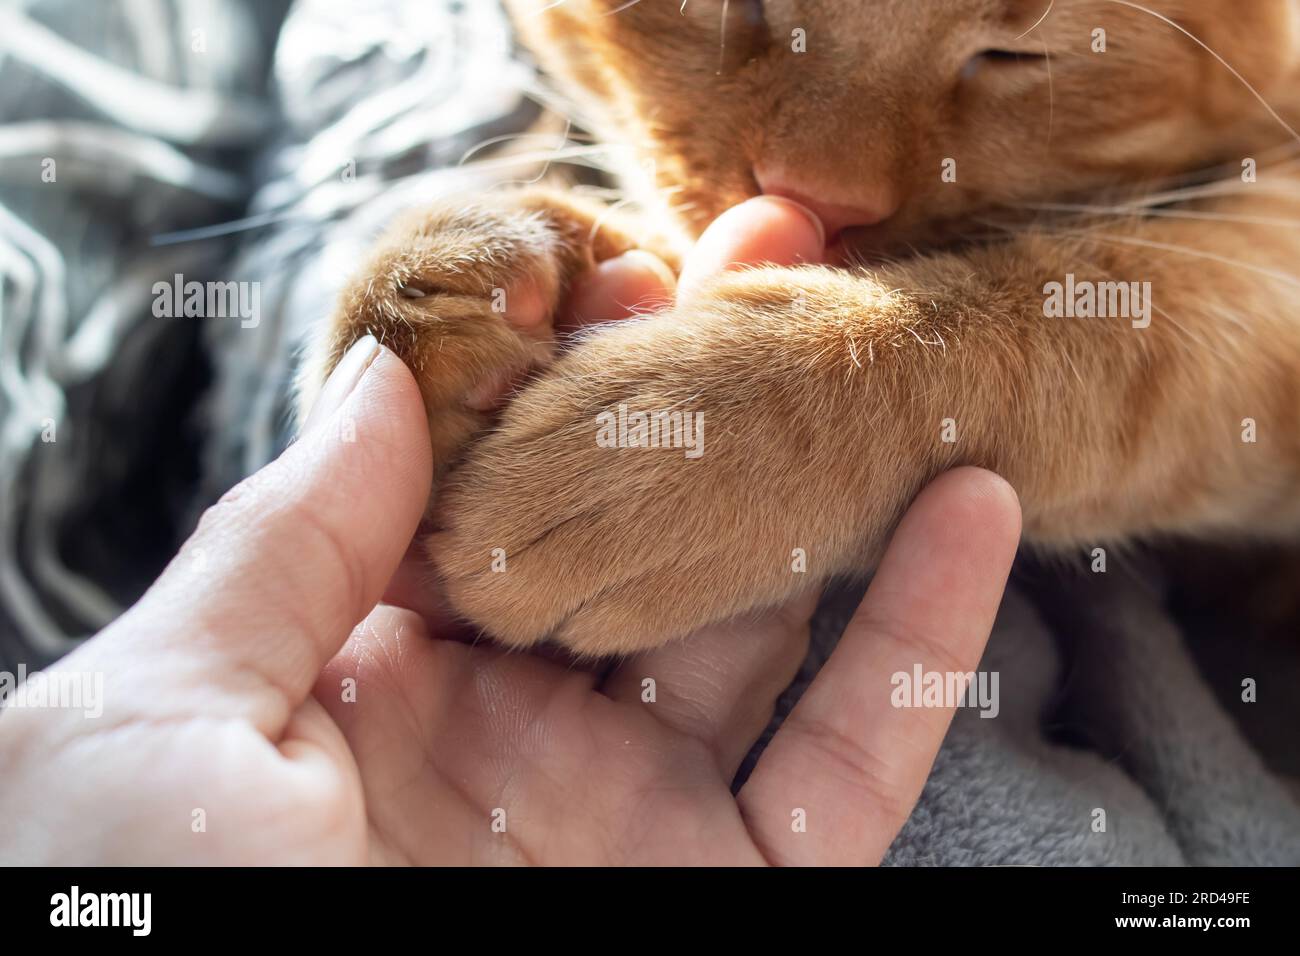 Un gato rojo sostiene la mano de un hombre con sus patas de cerca Foto de stock